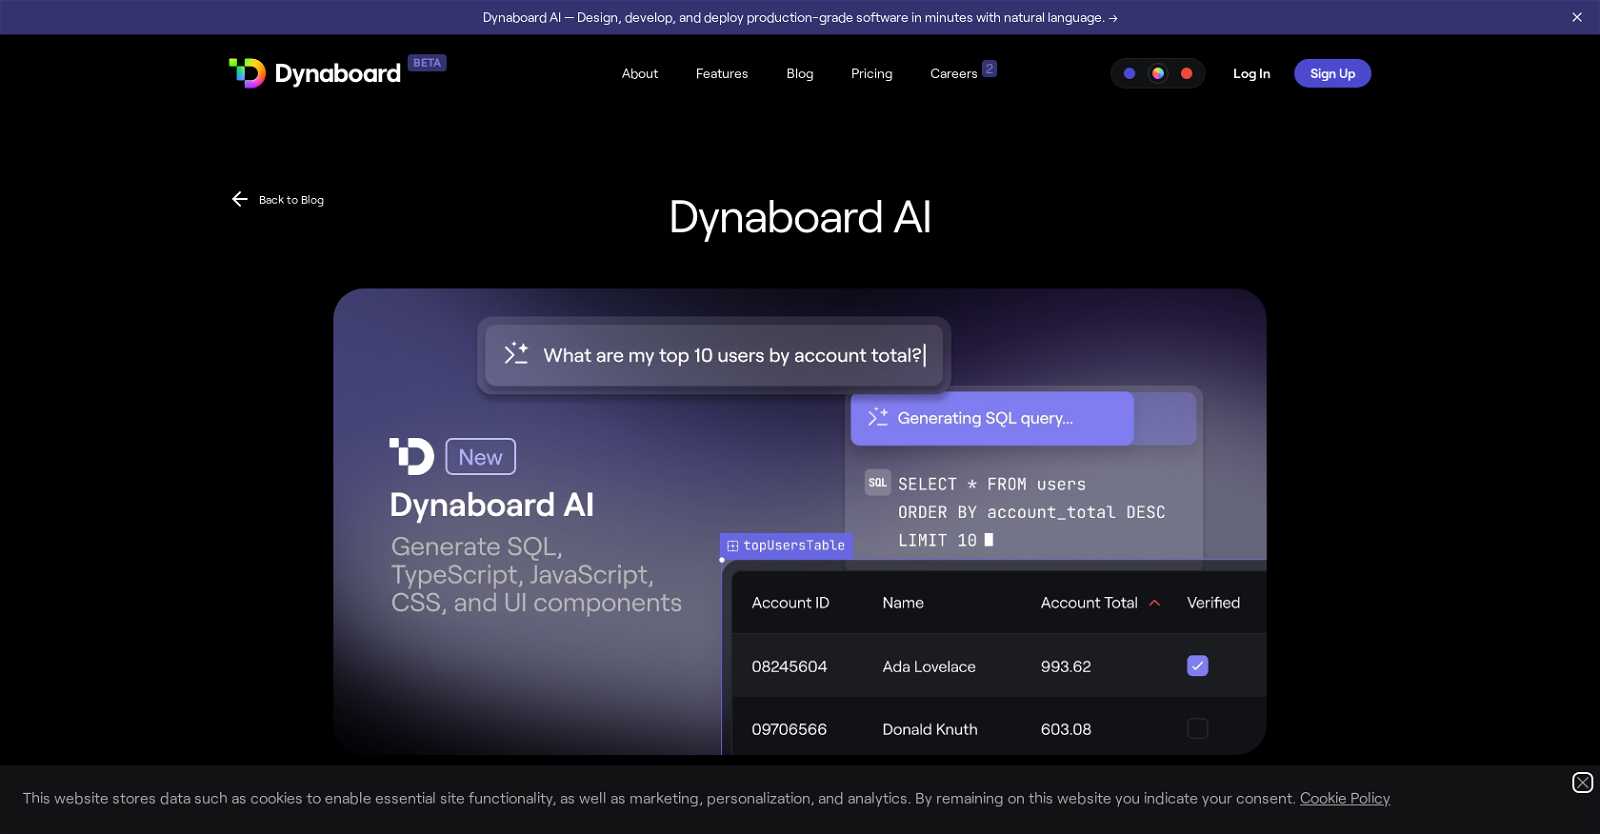 Dynaboard AI website